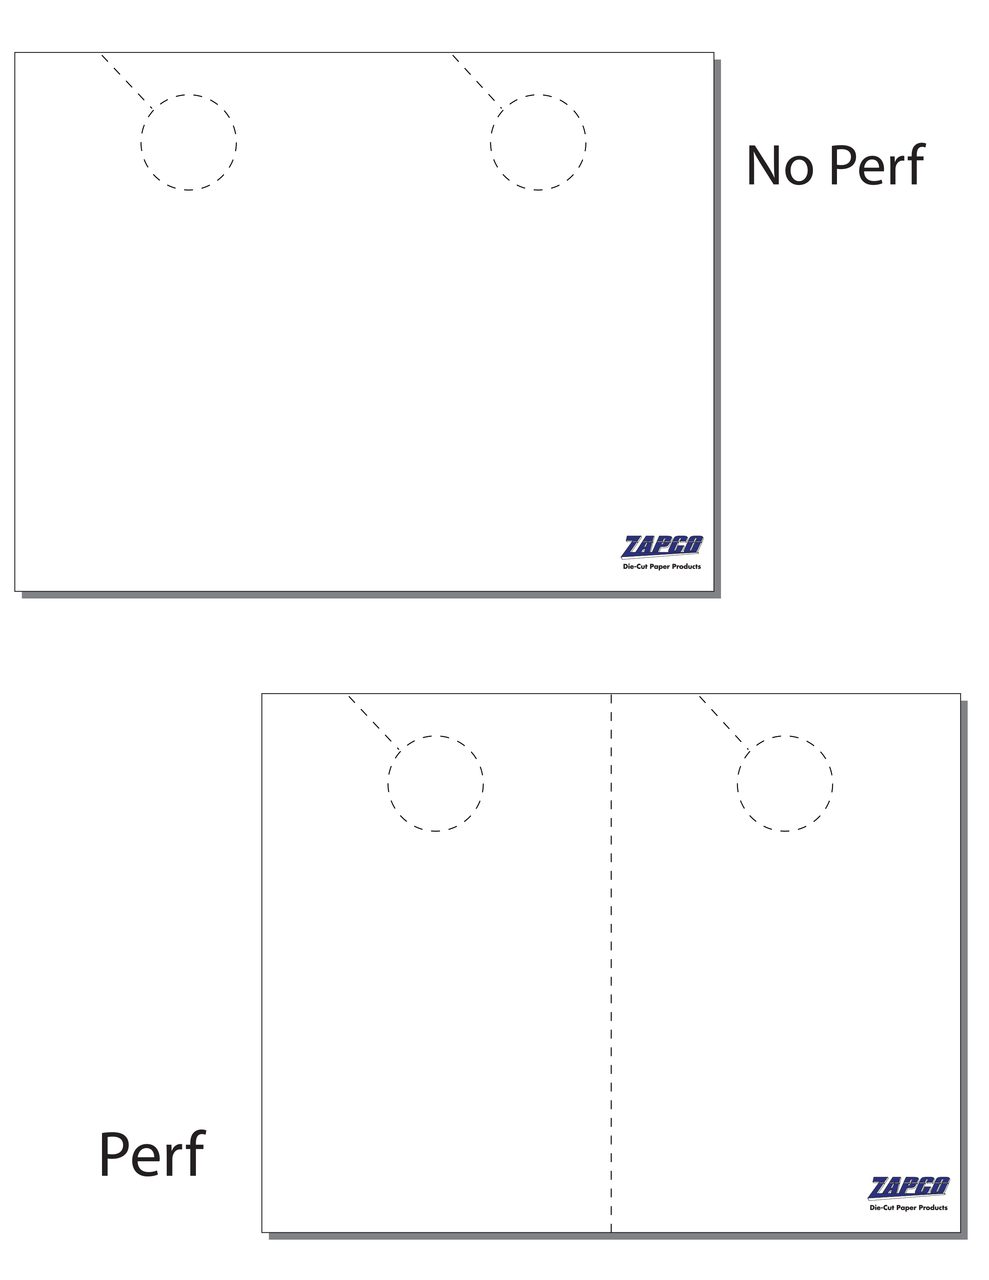 Item 210: 2-Up 5 1/2" x 8 1/2" Door Hanger 8 1/2" x 11" Sheet(250 Sheets)